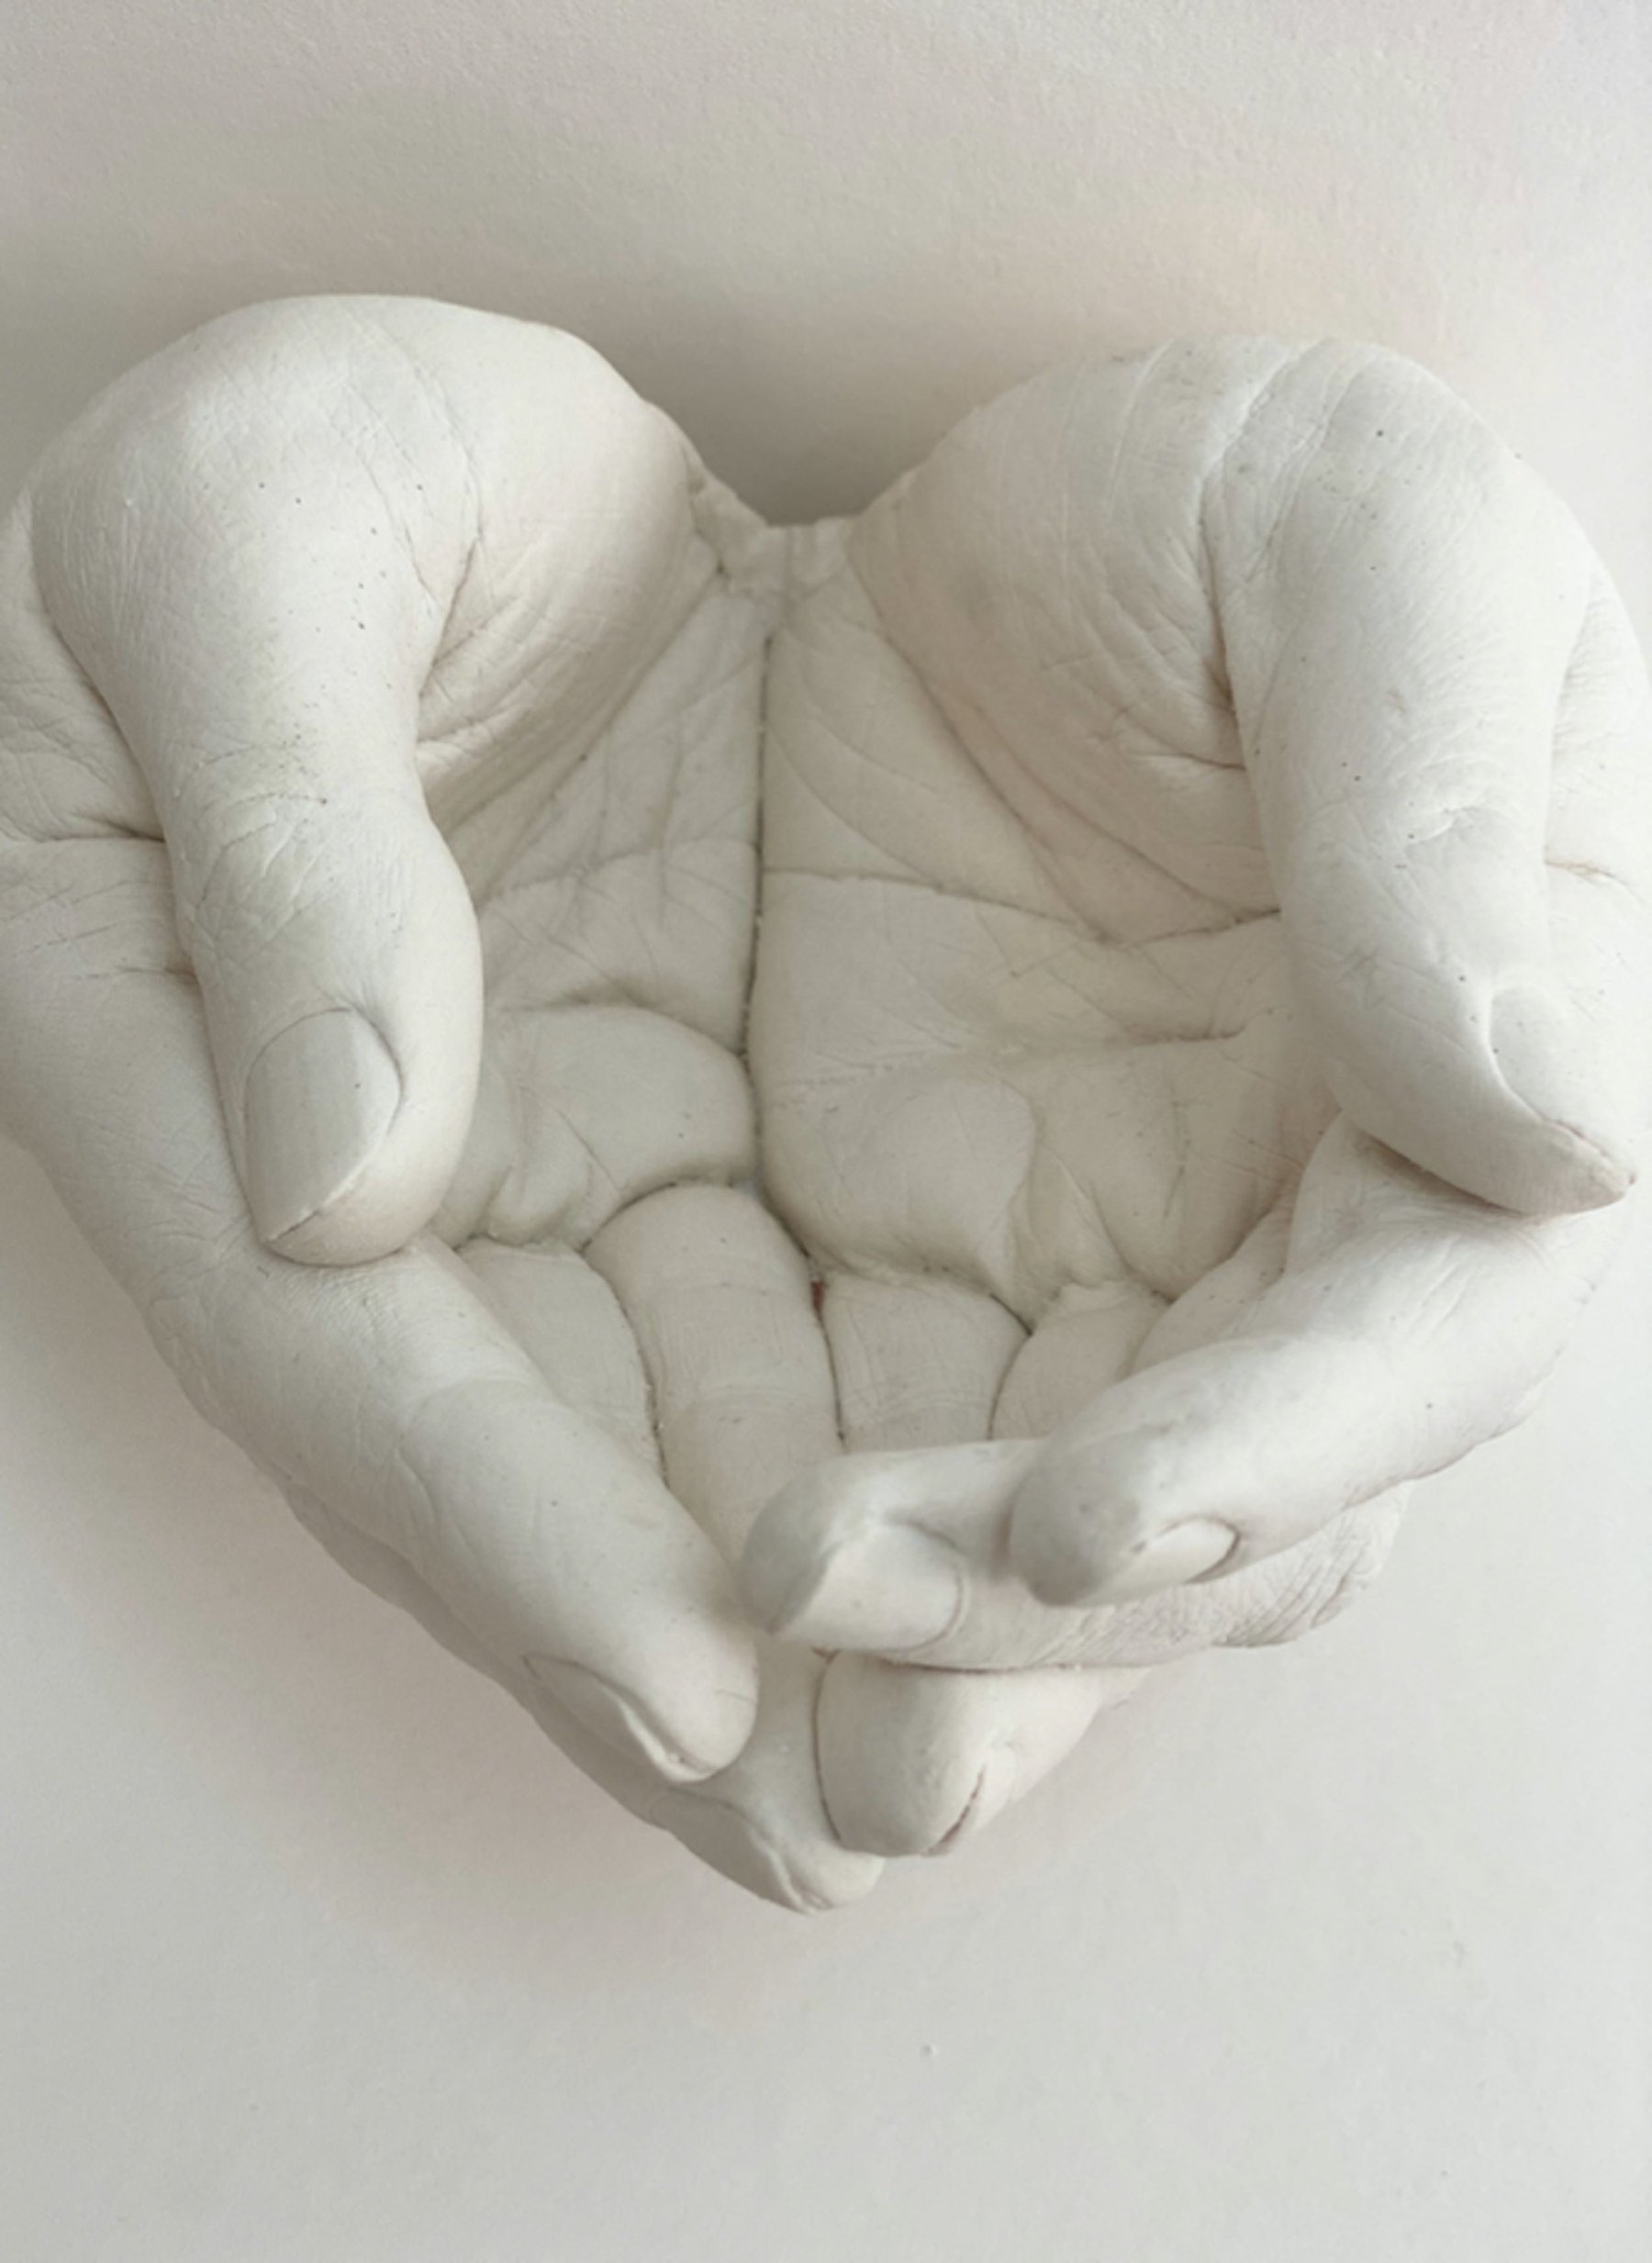 open hands cast in plaster